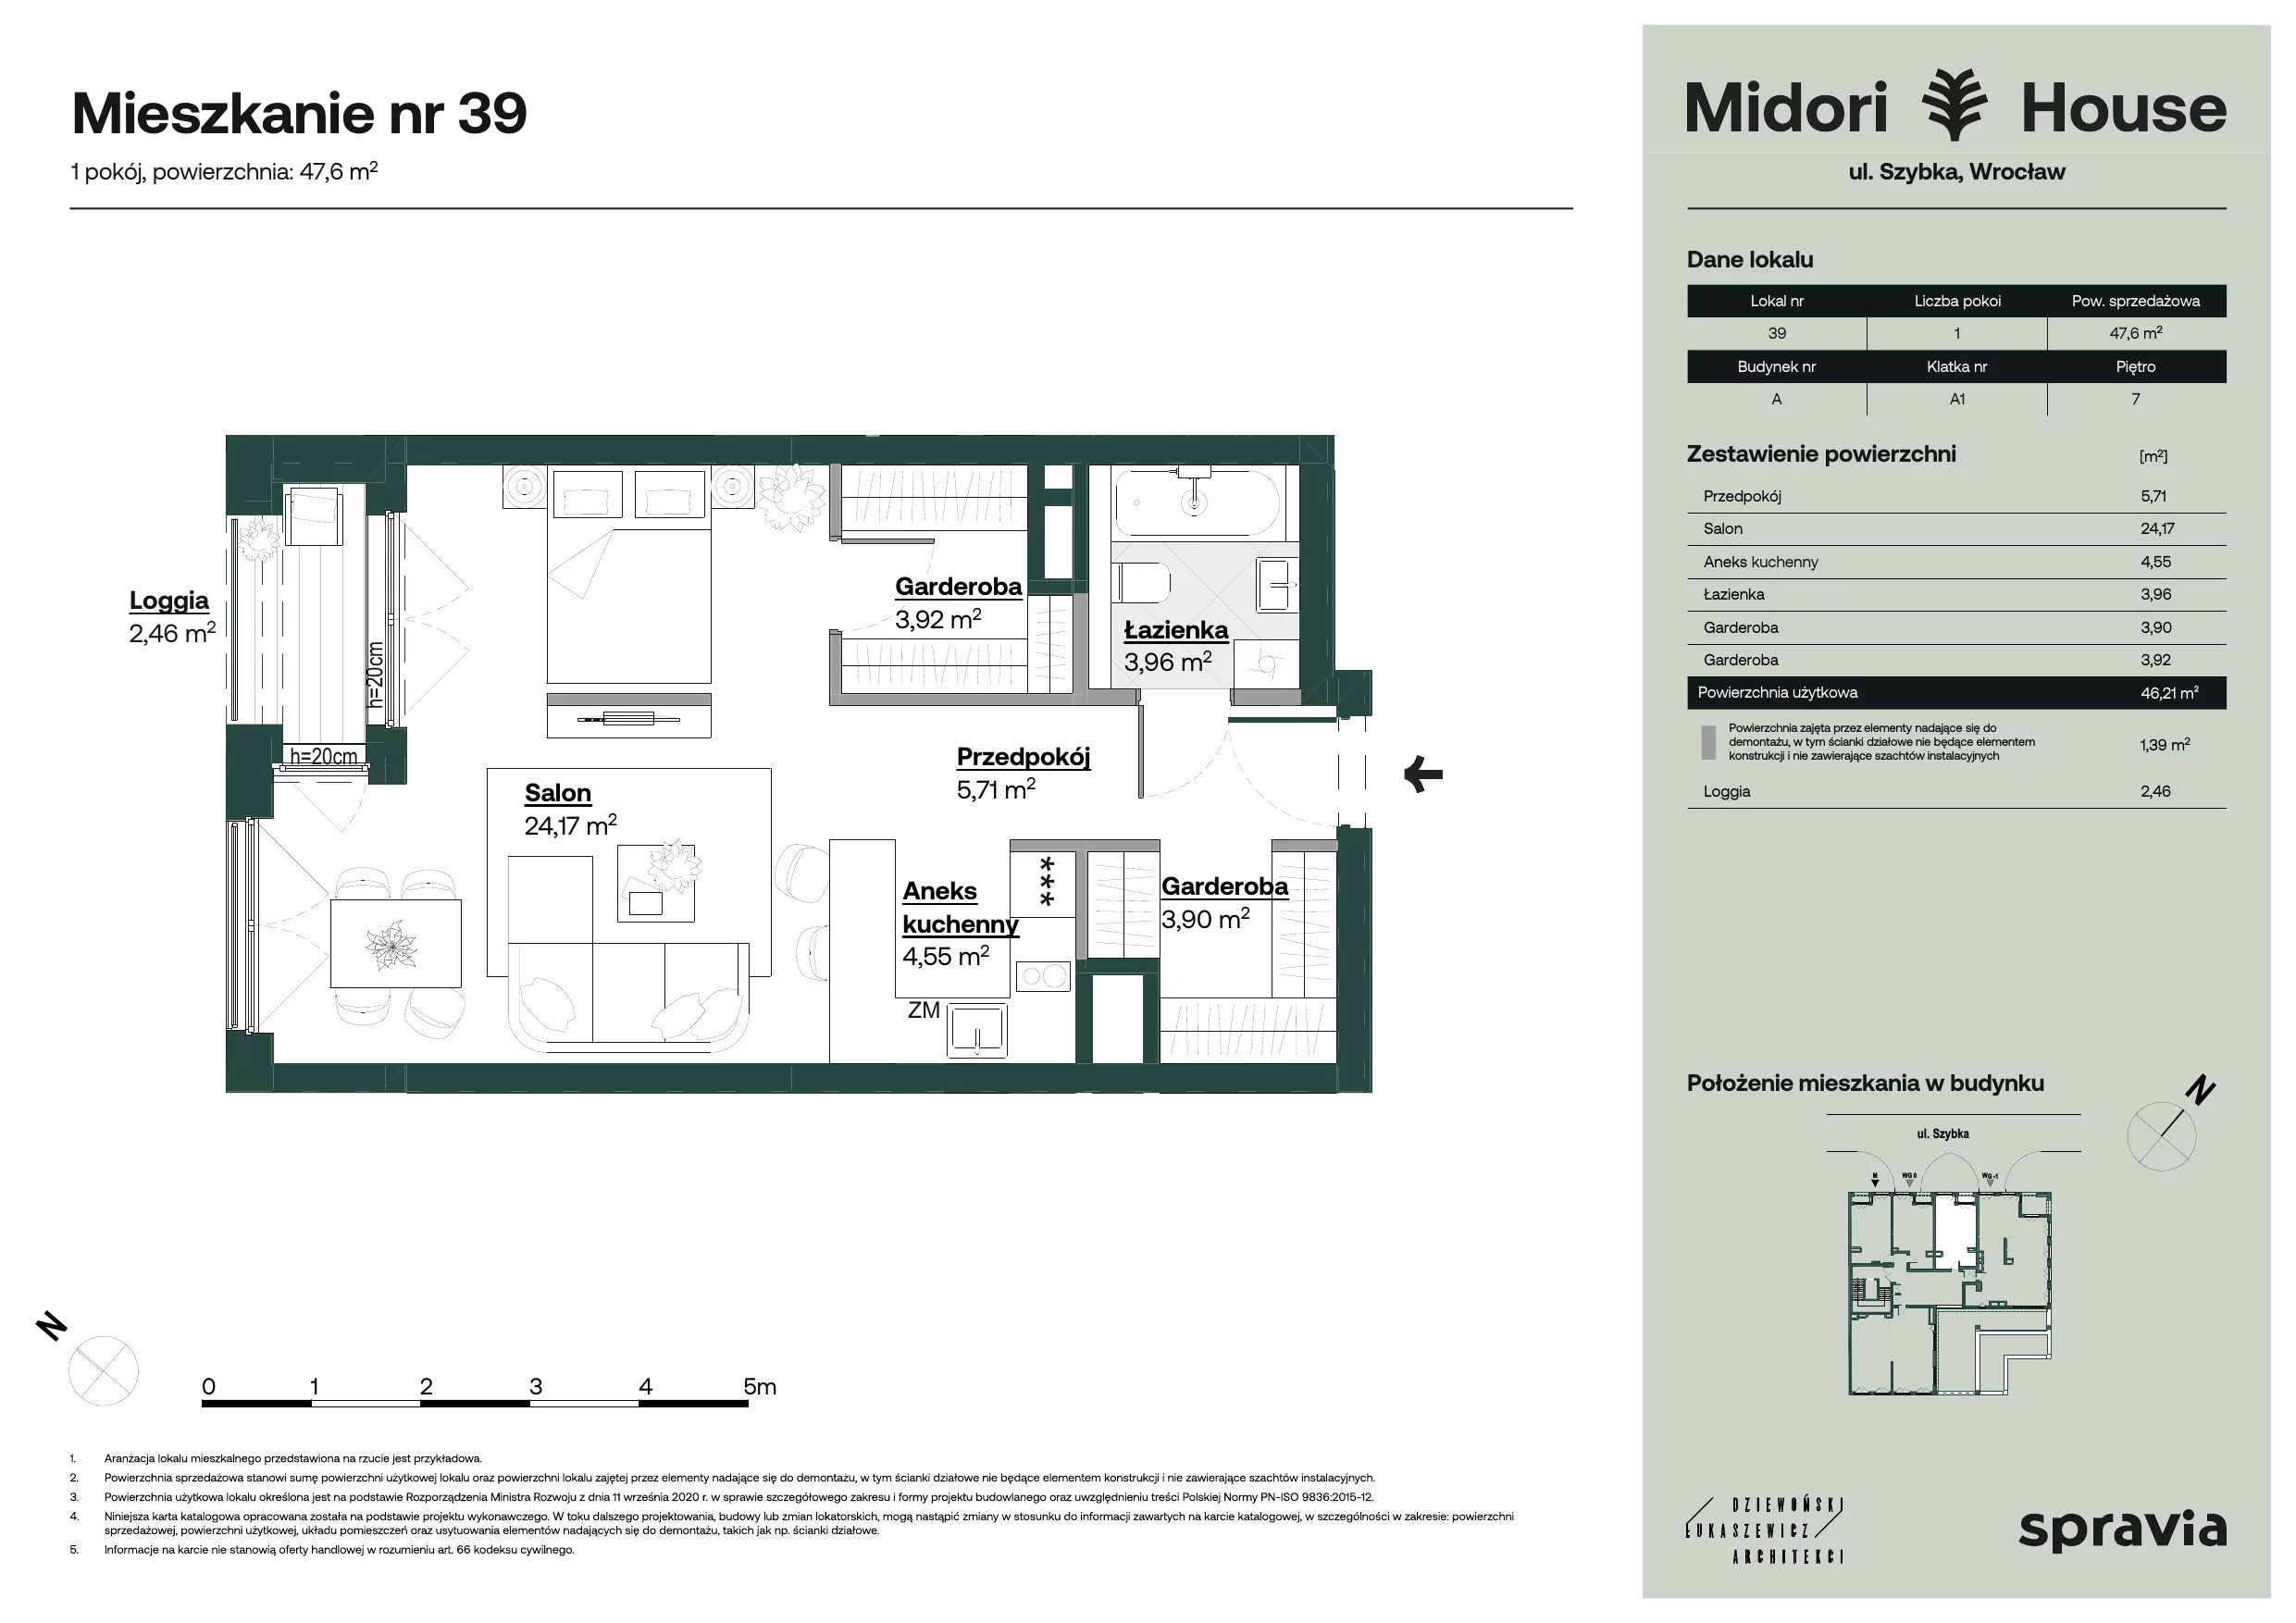 Apartament 47,60 m², piętro 7, oferta nr 39, Midori House, Wrocław, Przedmieście Oławskie, ul. Szybka 9